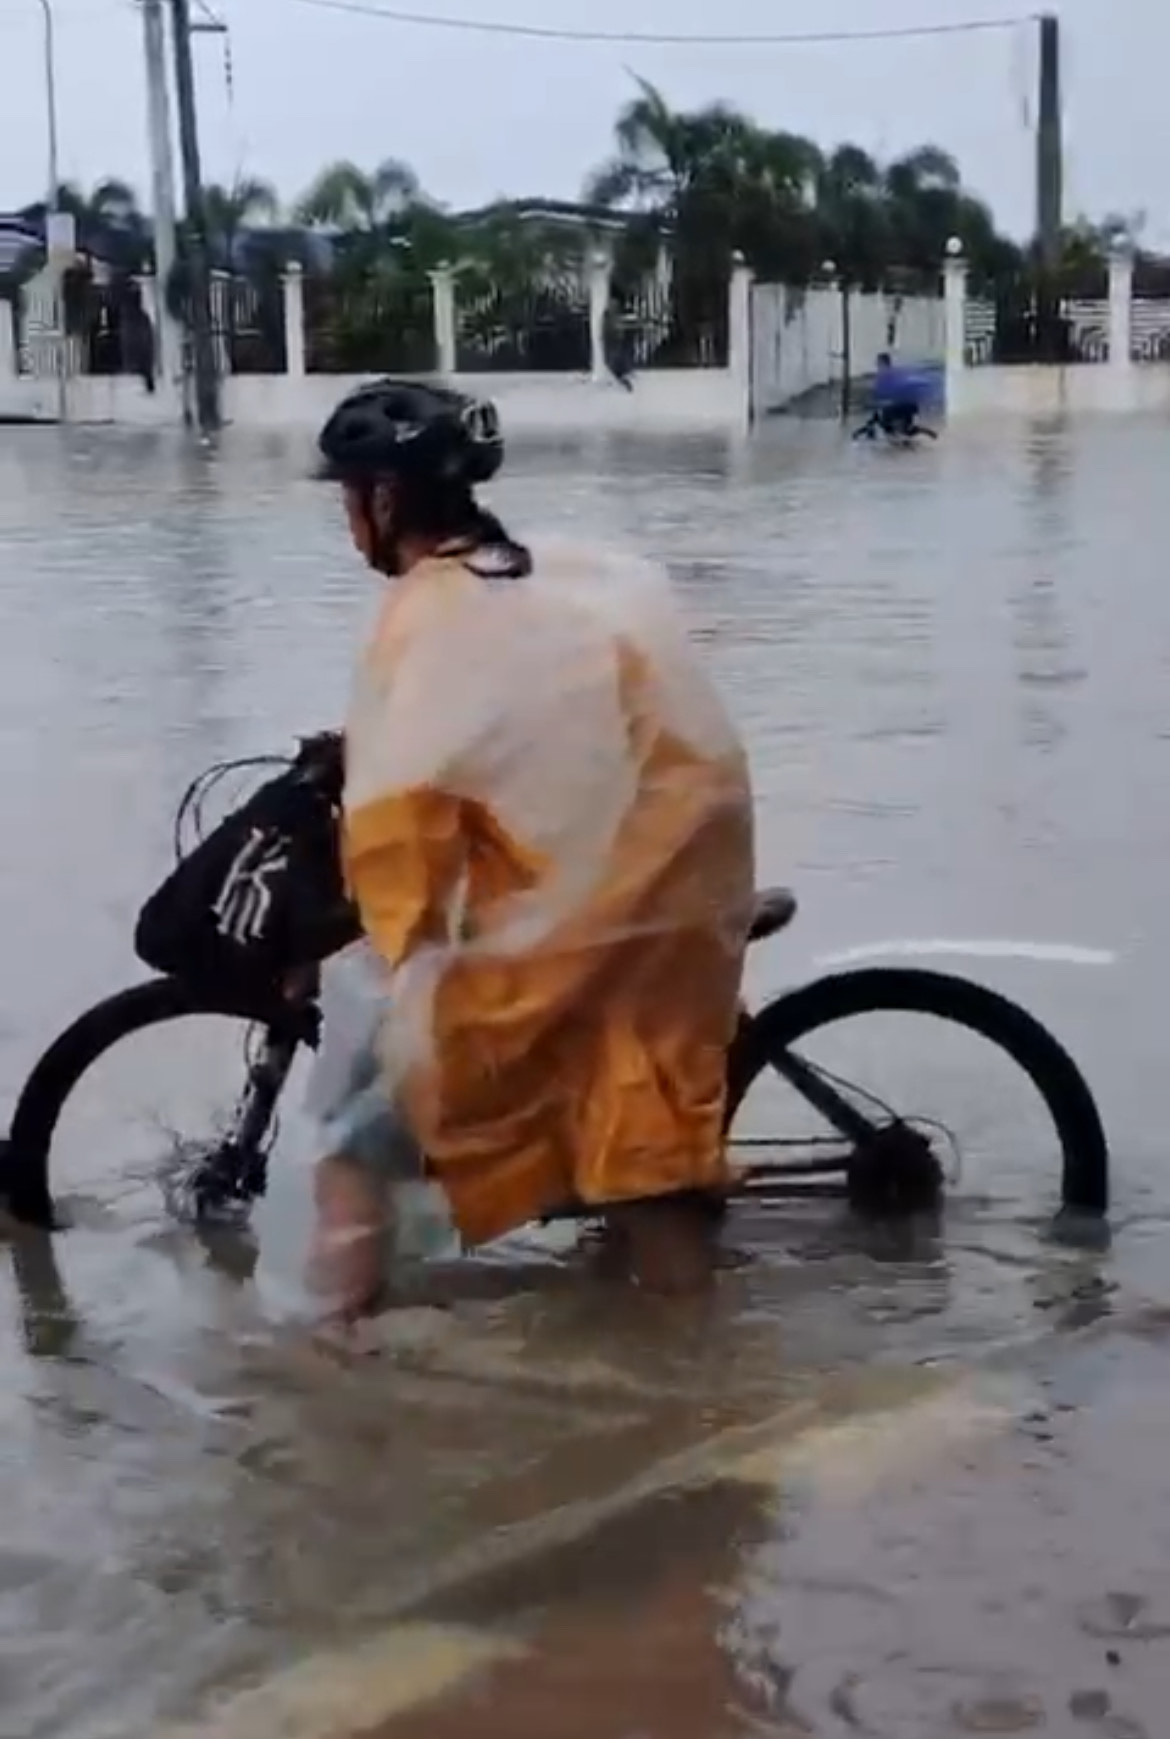 A cyclist passes through the gutter-deep floods. 